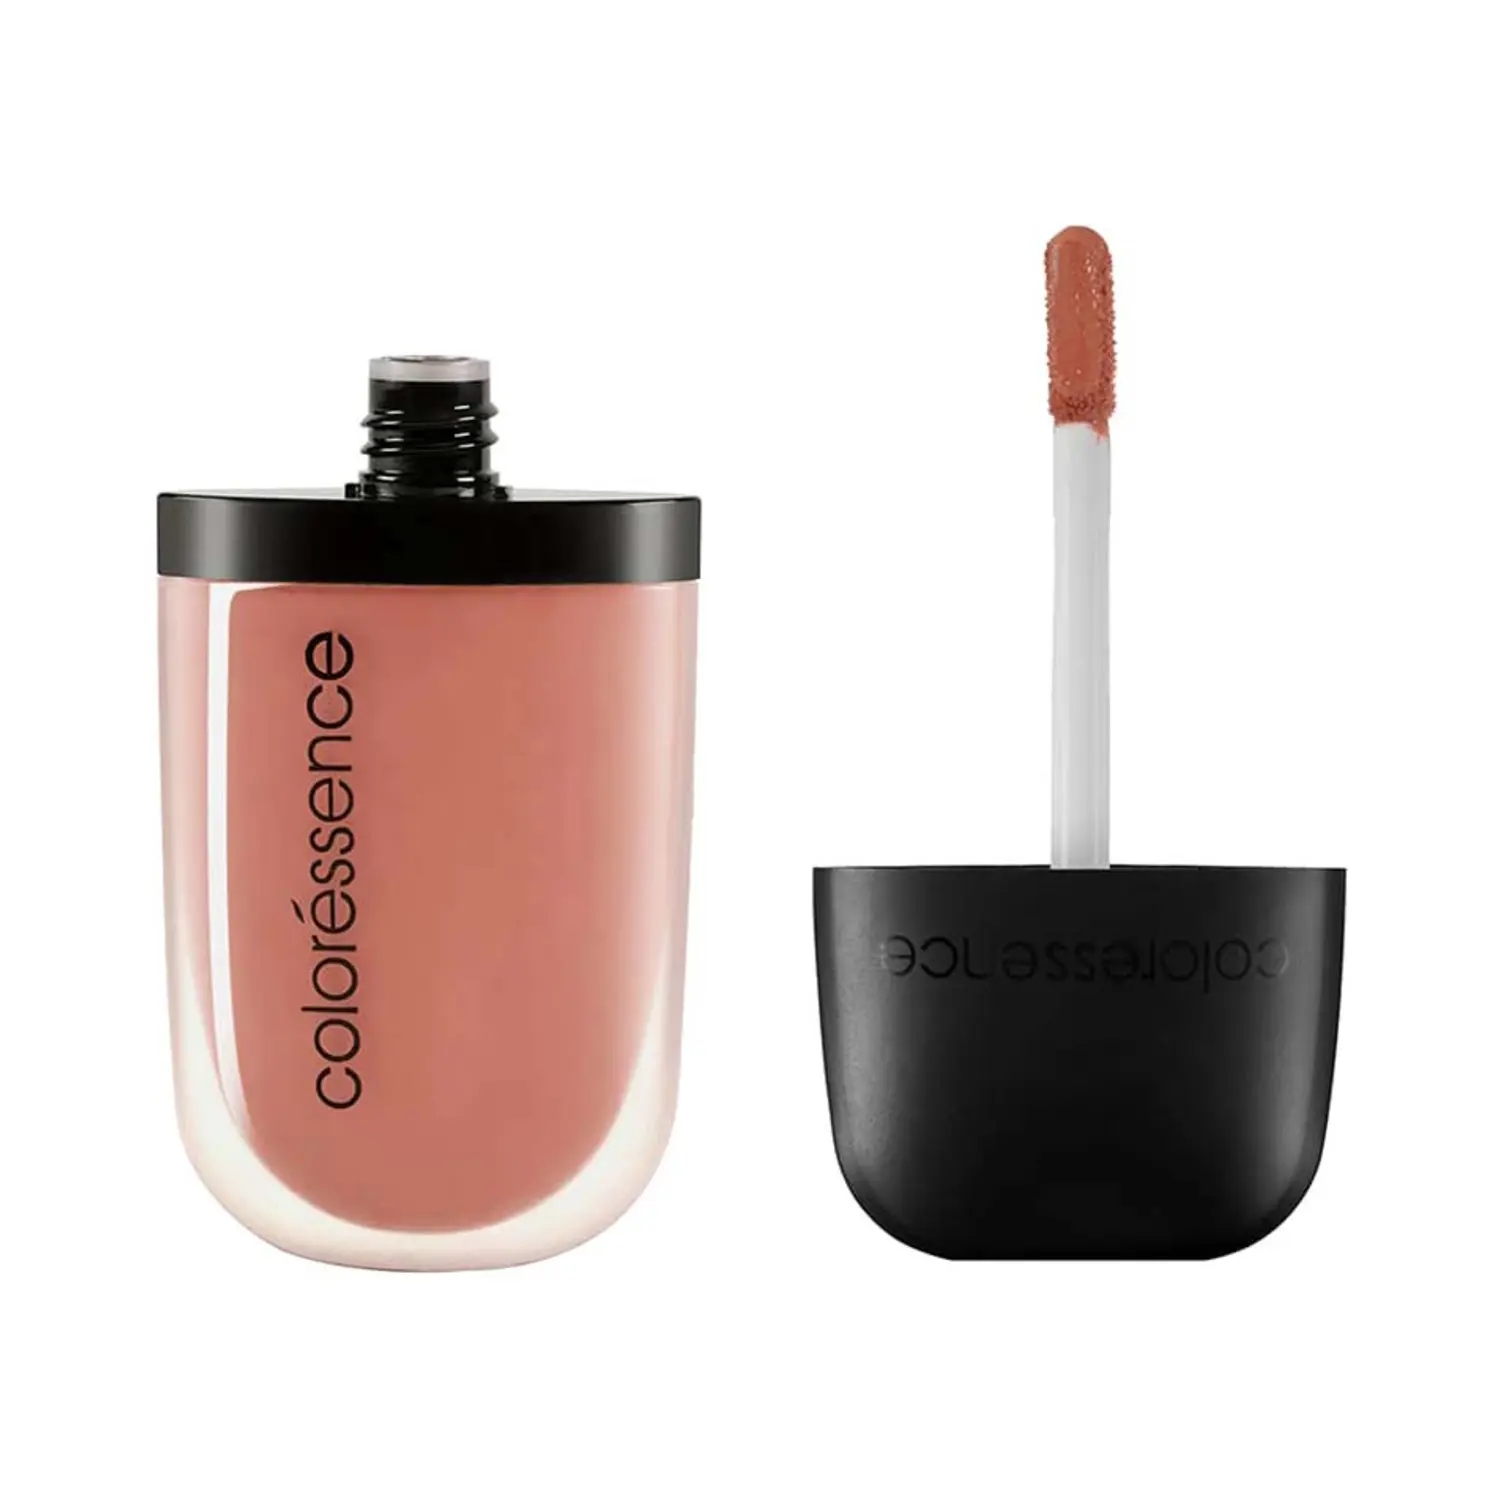 Coloressence | Coloressence Intense Soft Matte Liquid Lip Color Lipstick - Cocoa Love (8ml)